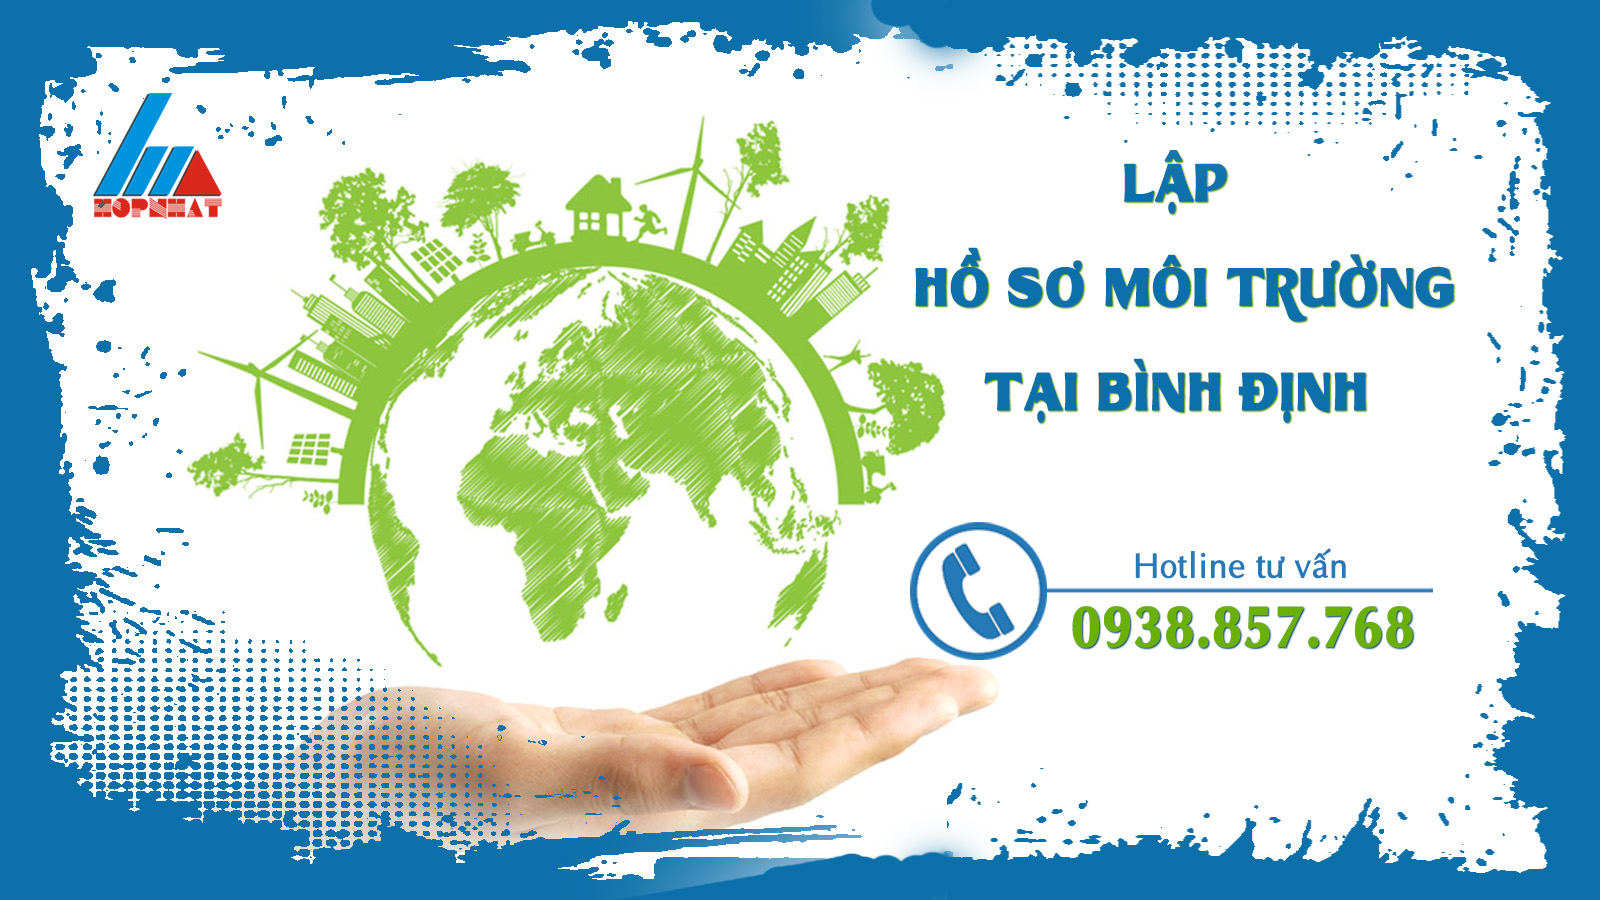 Dịch vụ lập hồ sơ môi trường ở Bình Định